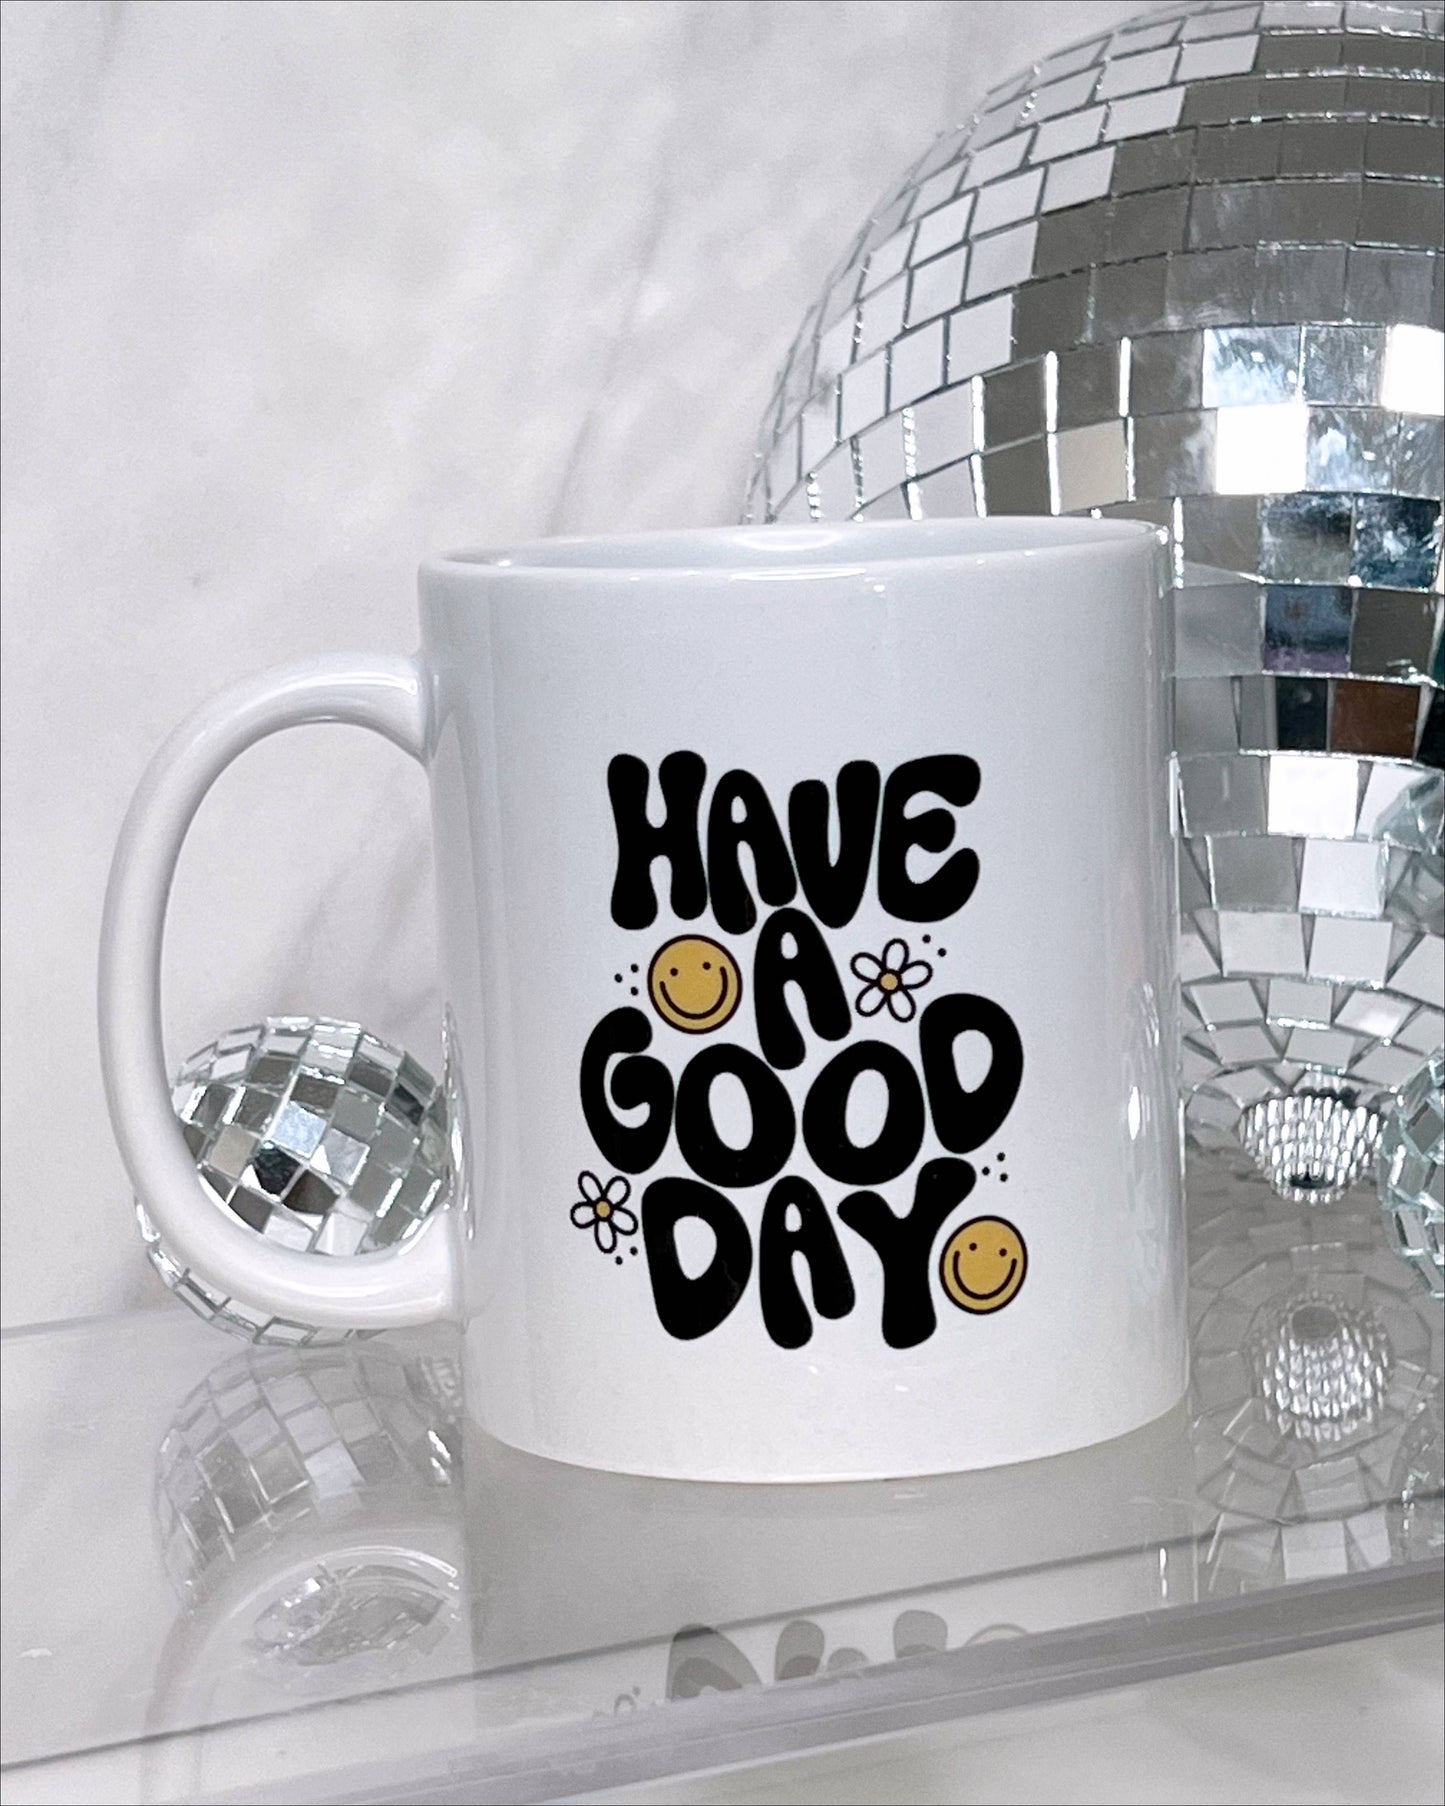 Good Day | Mug